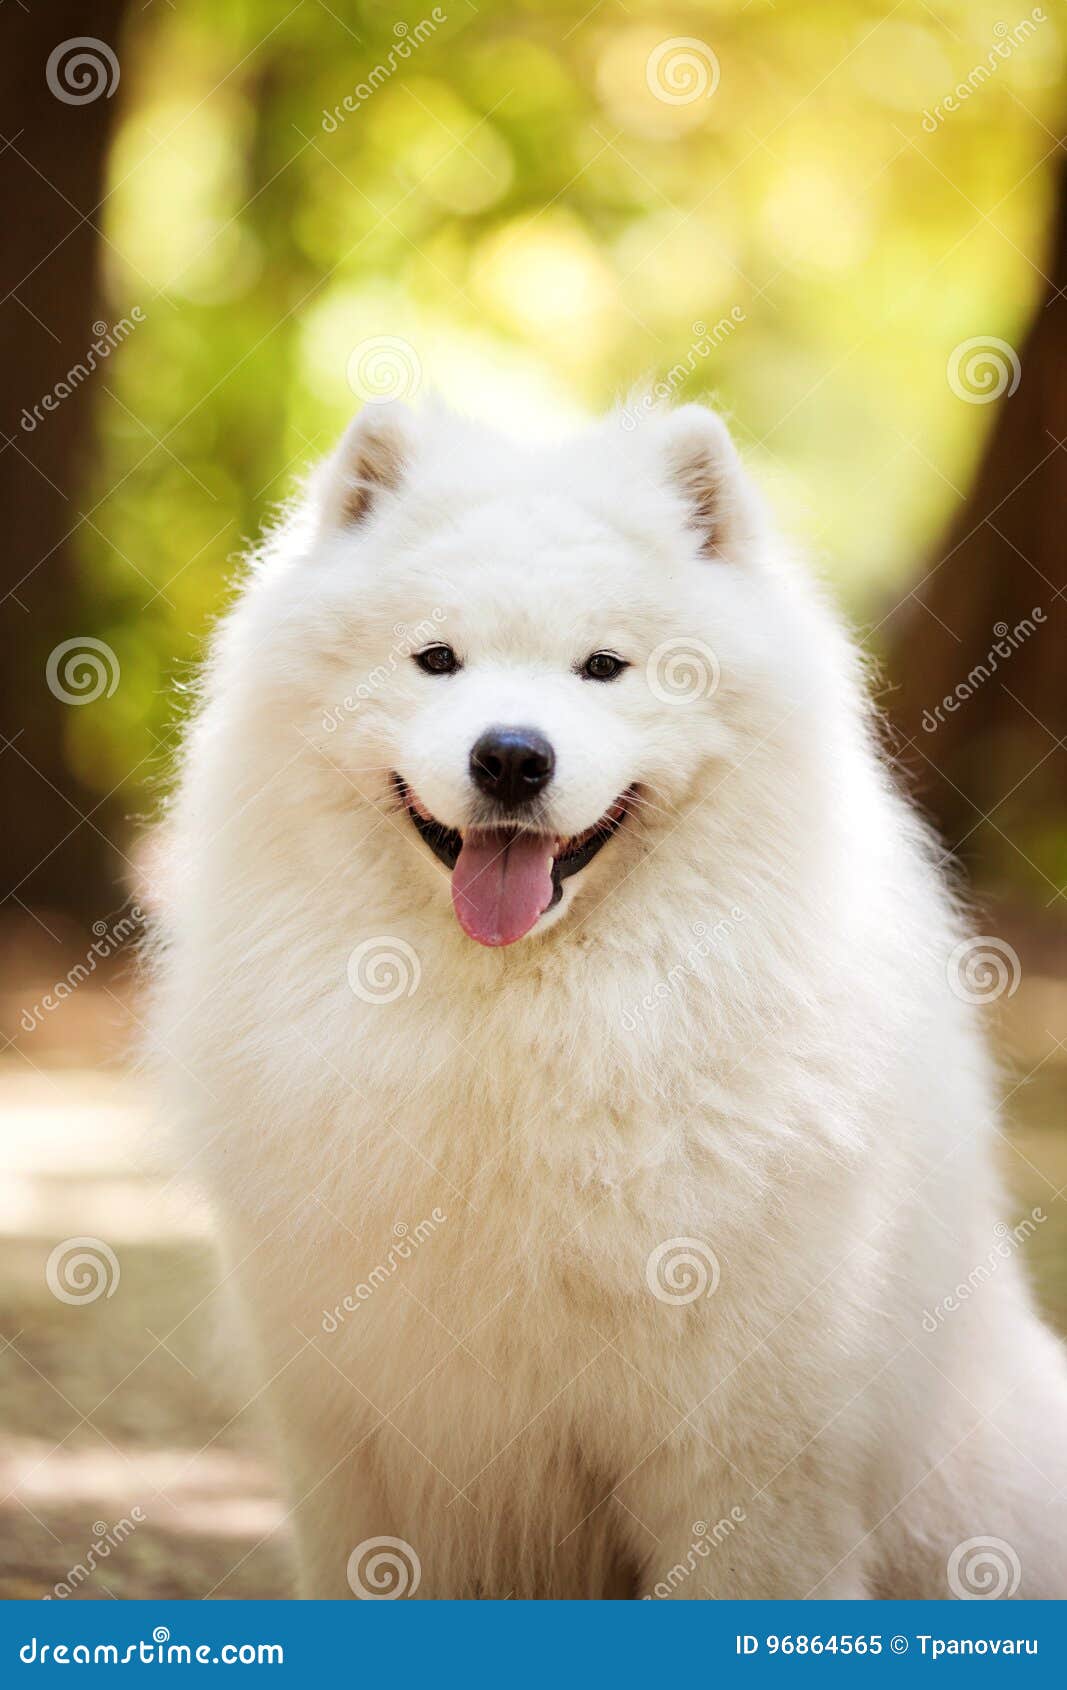 Big white samoyed dog stock image. Image of portrait - 96864565